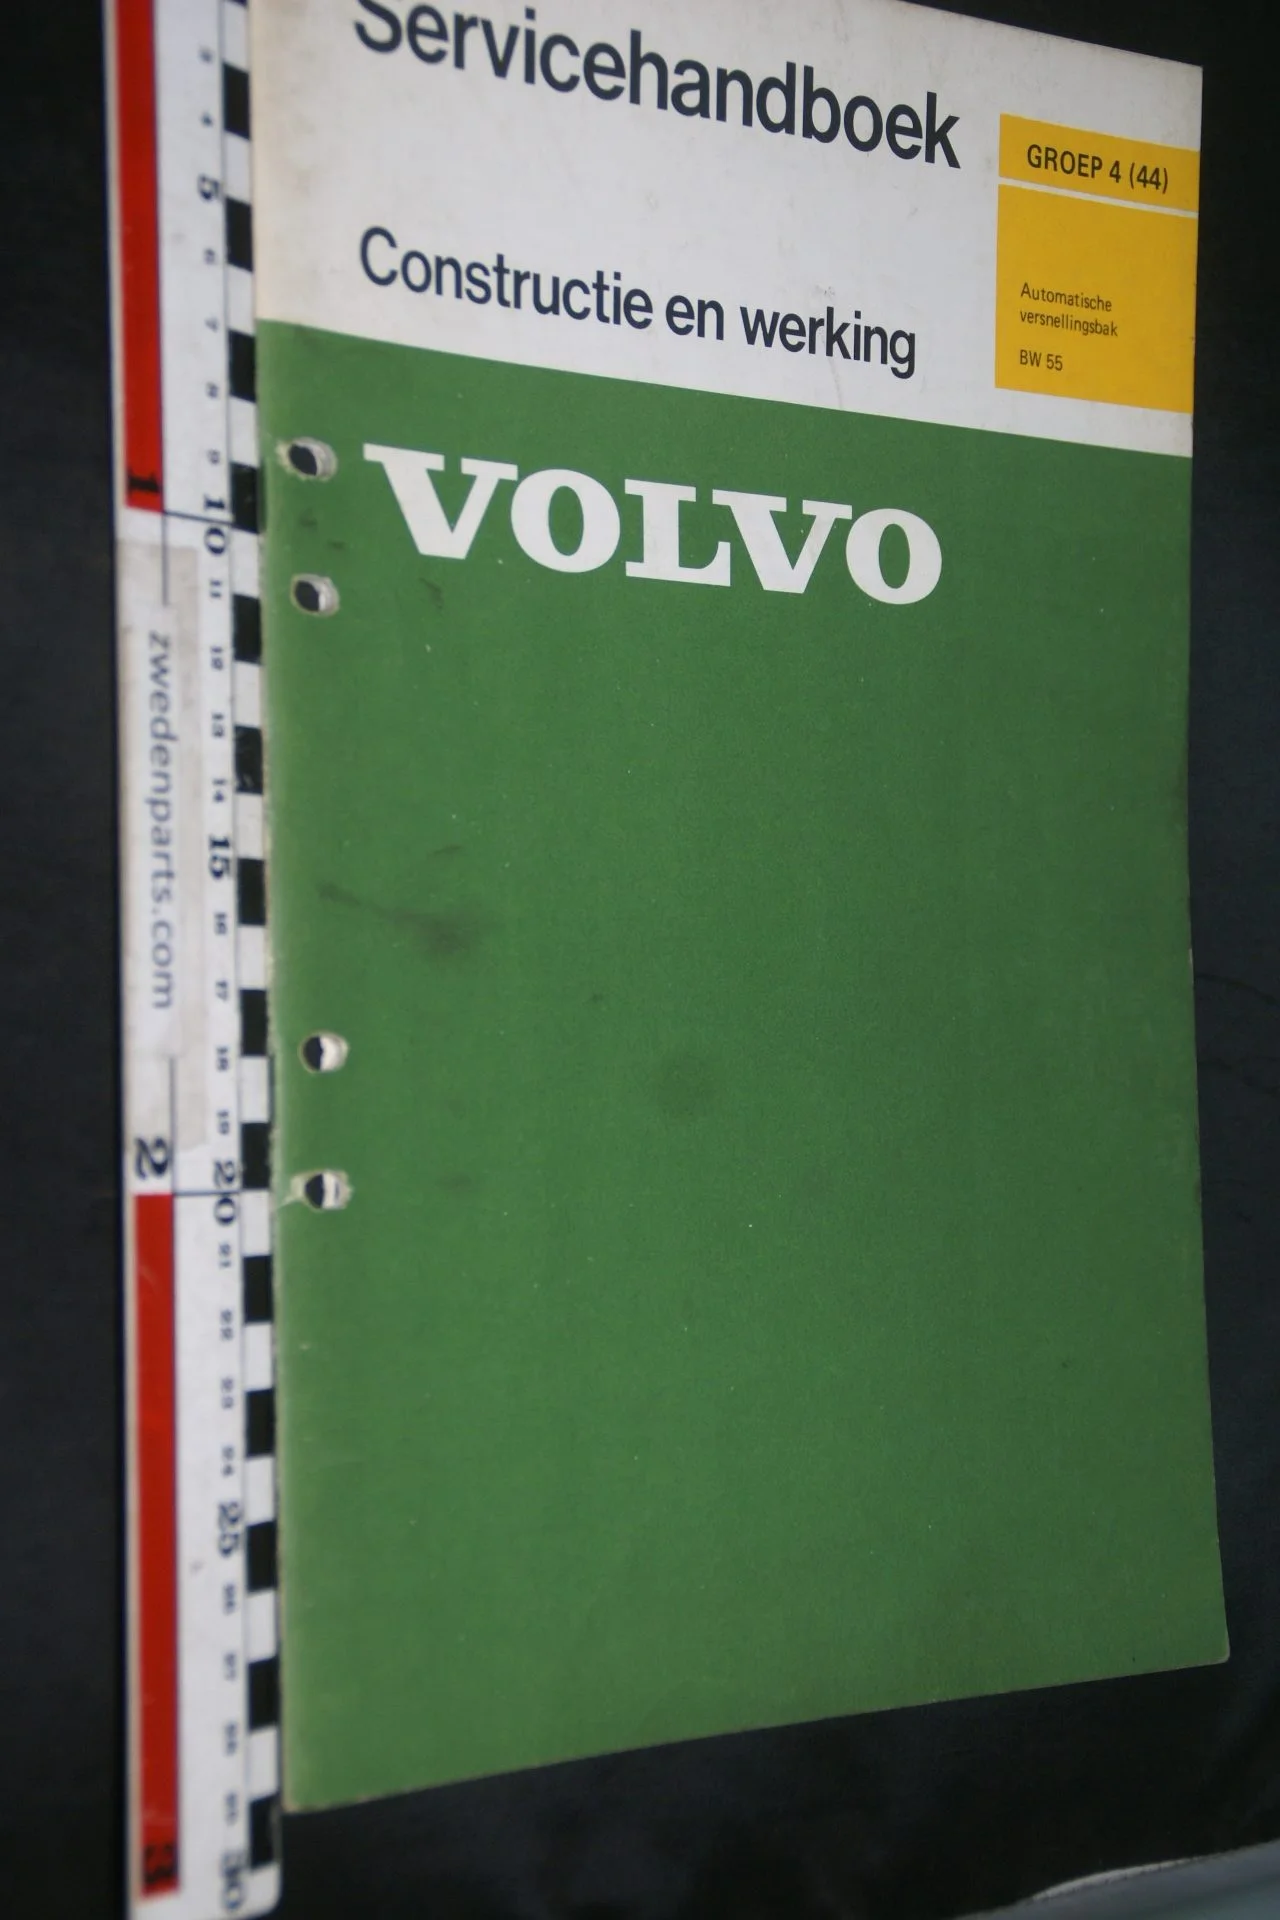 DSC07298 1975 origineel Volvo servicehandboek  4(44) automatische versnellingsbak BW35 1 van 500 TP 10998-1